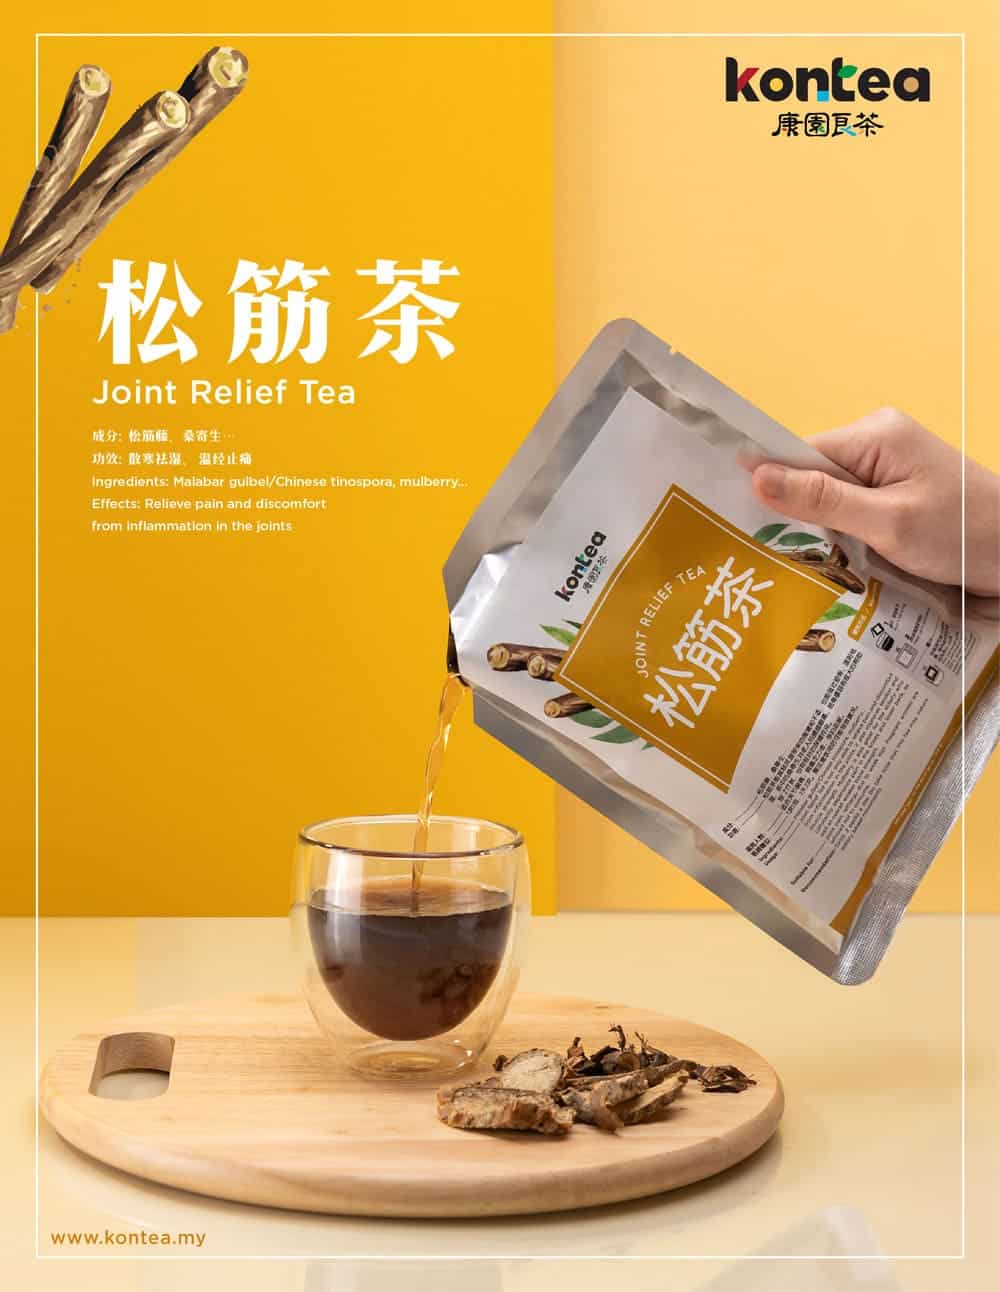 Kontea 松筋茶 Join Relief Tea